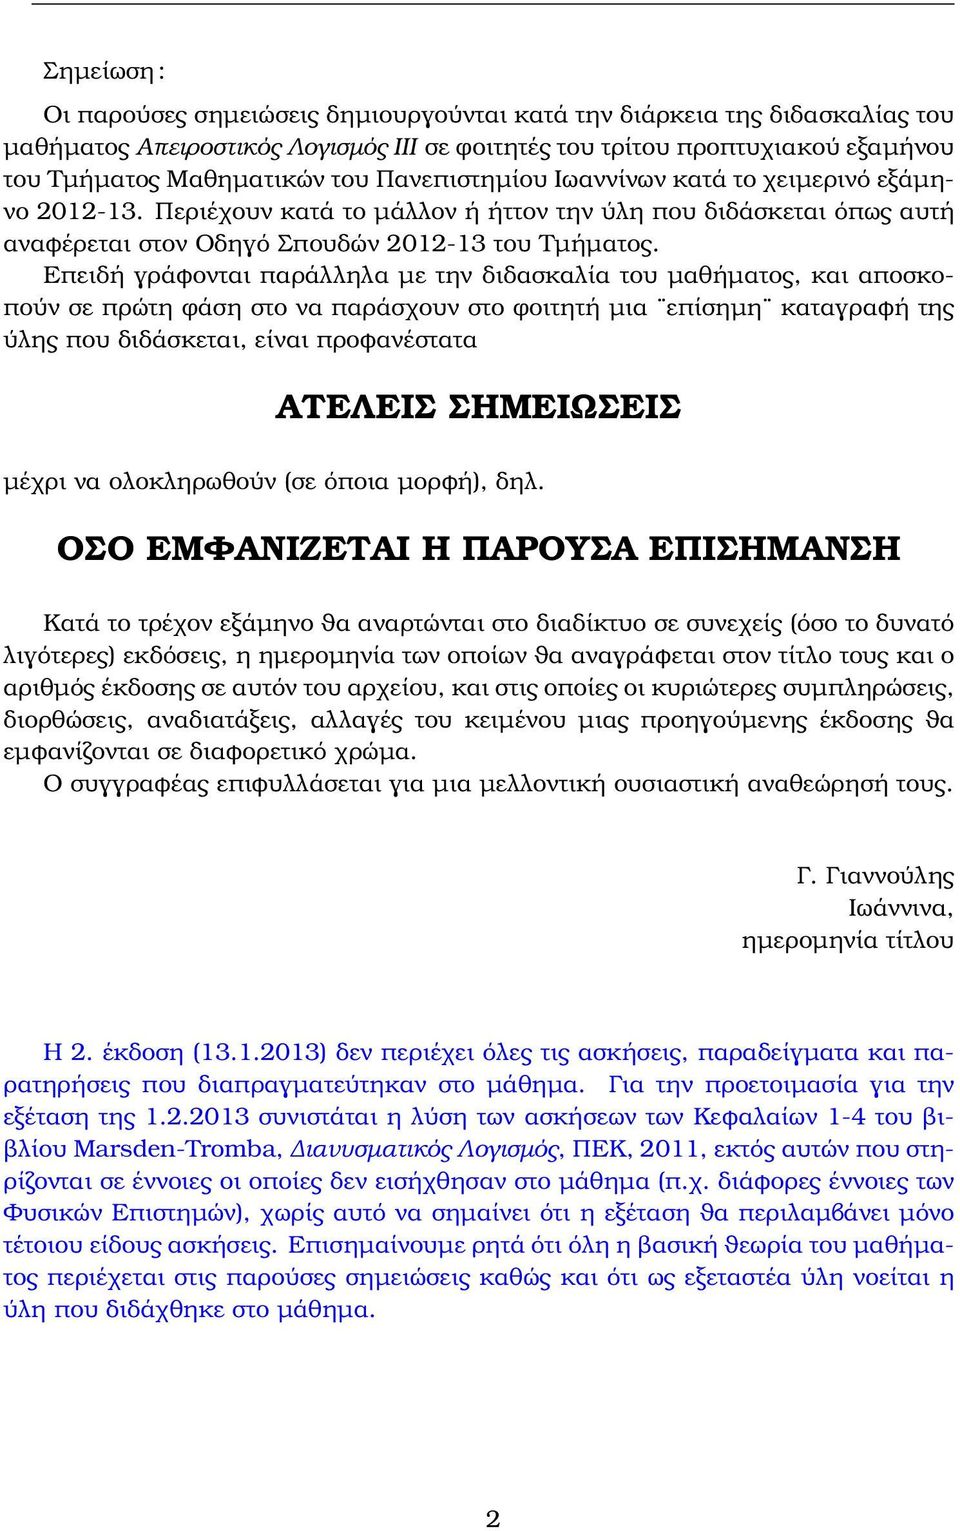 ιανυσµατική Ανάλυση Γιάννης Γιαννούλης - PDF Free Download